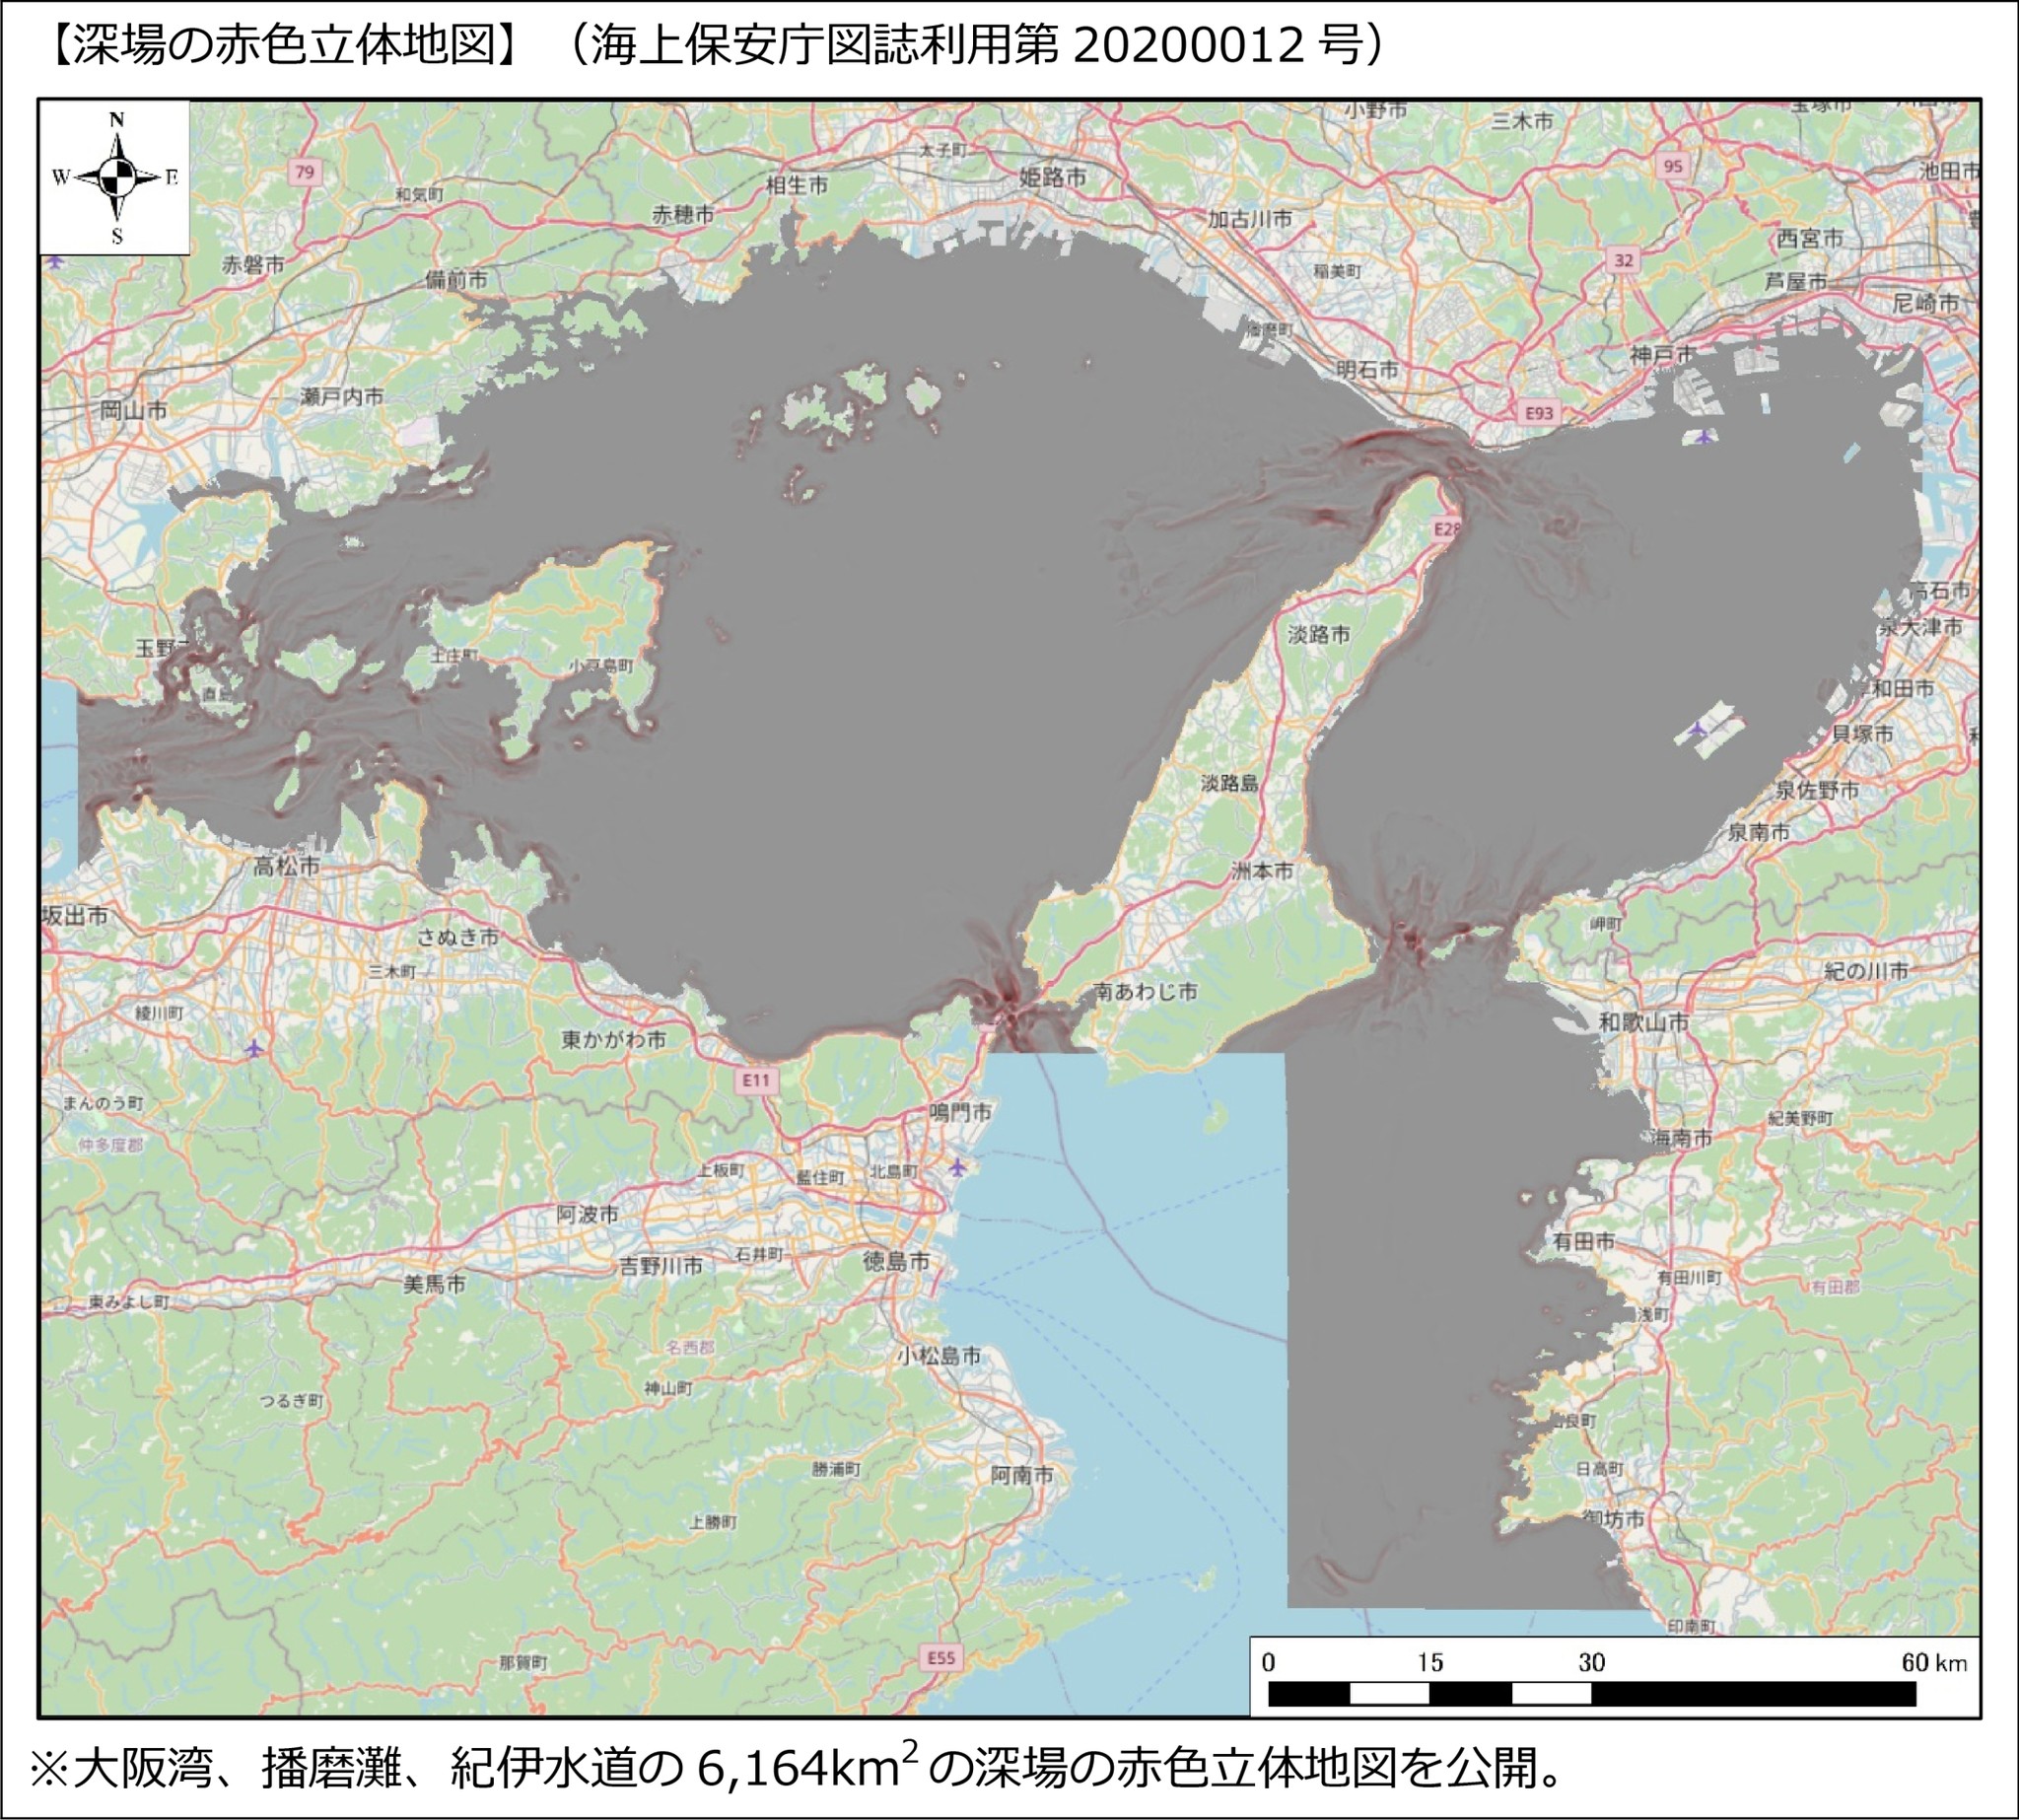 コンテンツ追加 海底地形マップアプリ 釣りドコ に大阪湾 播磨灘 紀伊水道にかけての 深場の赤色立体地図 を追加 アジア航測株式会社のプレスリリース